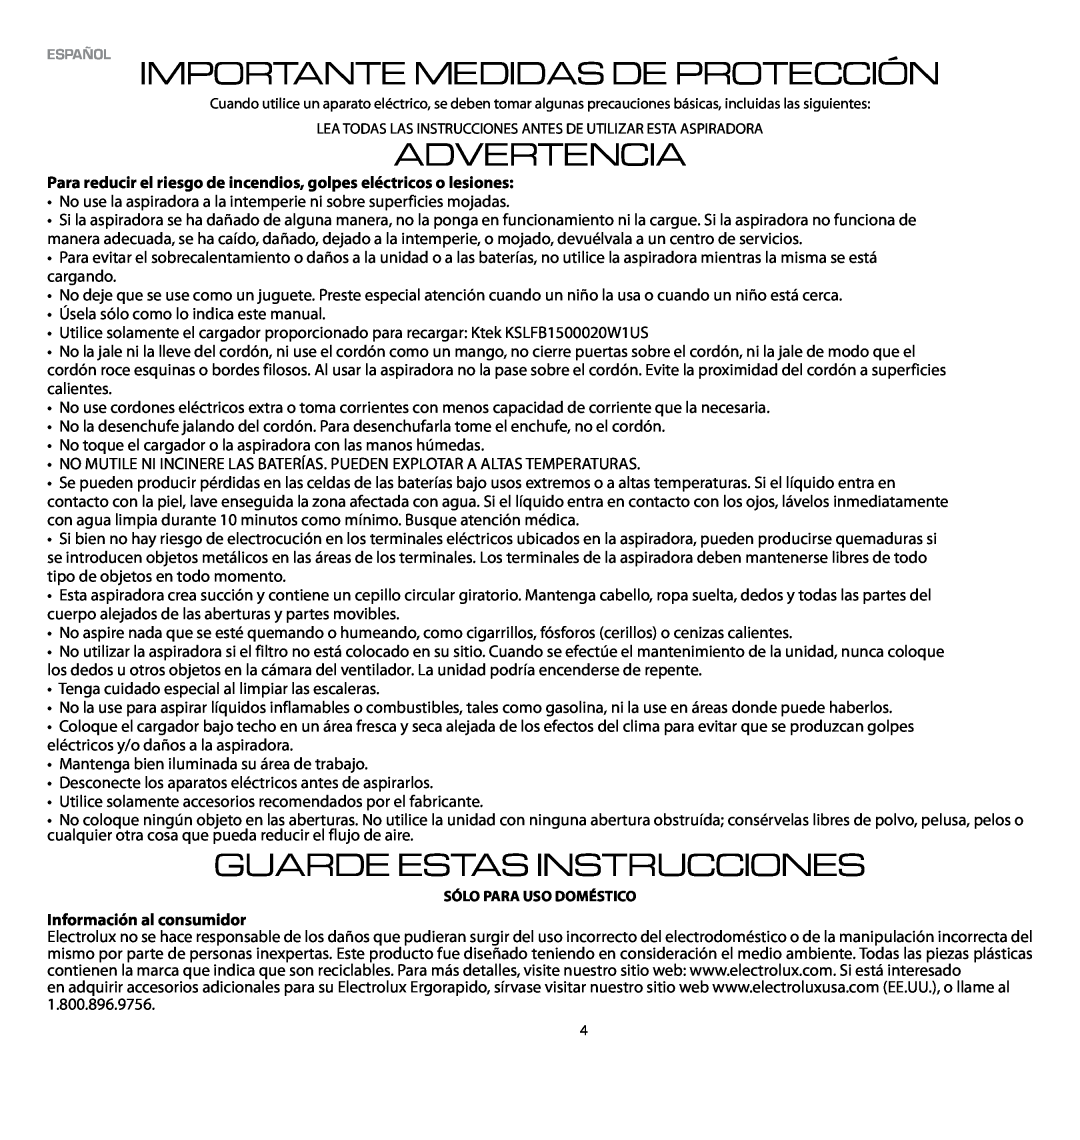 Electrolux EL1061A manual Español Importante Medidas De Protección, Advertencia, Guarde Estas Instrucciones 